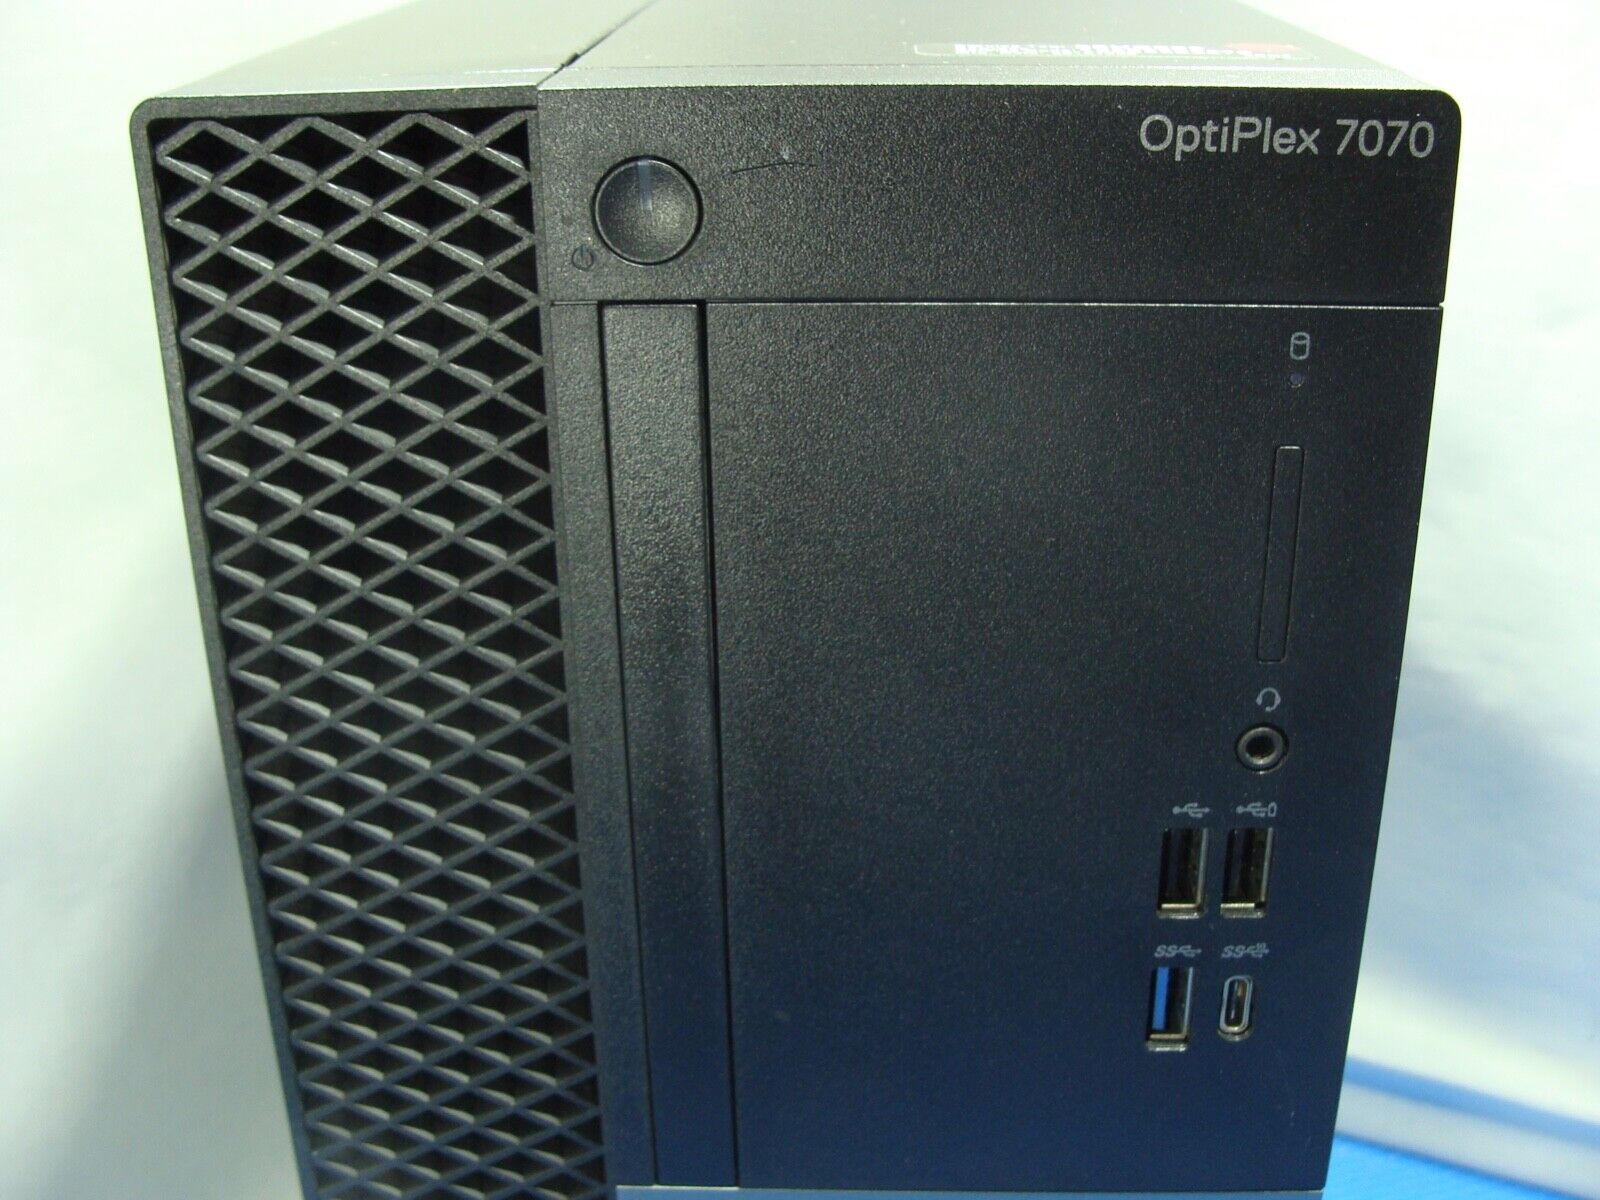 Dual Radeon RX550 4GB Dell Optiplex 7070 Tower Intel i9-9900 3.1GHz 32GB 256GB